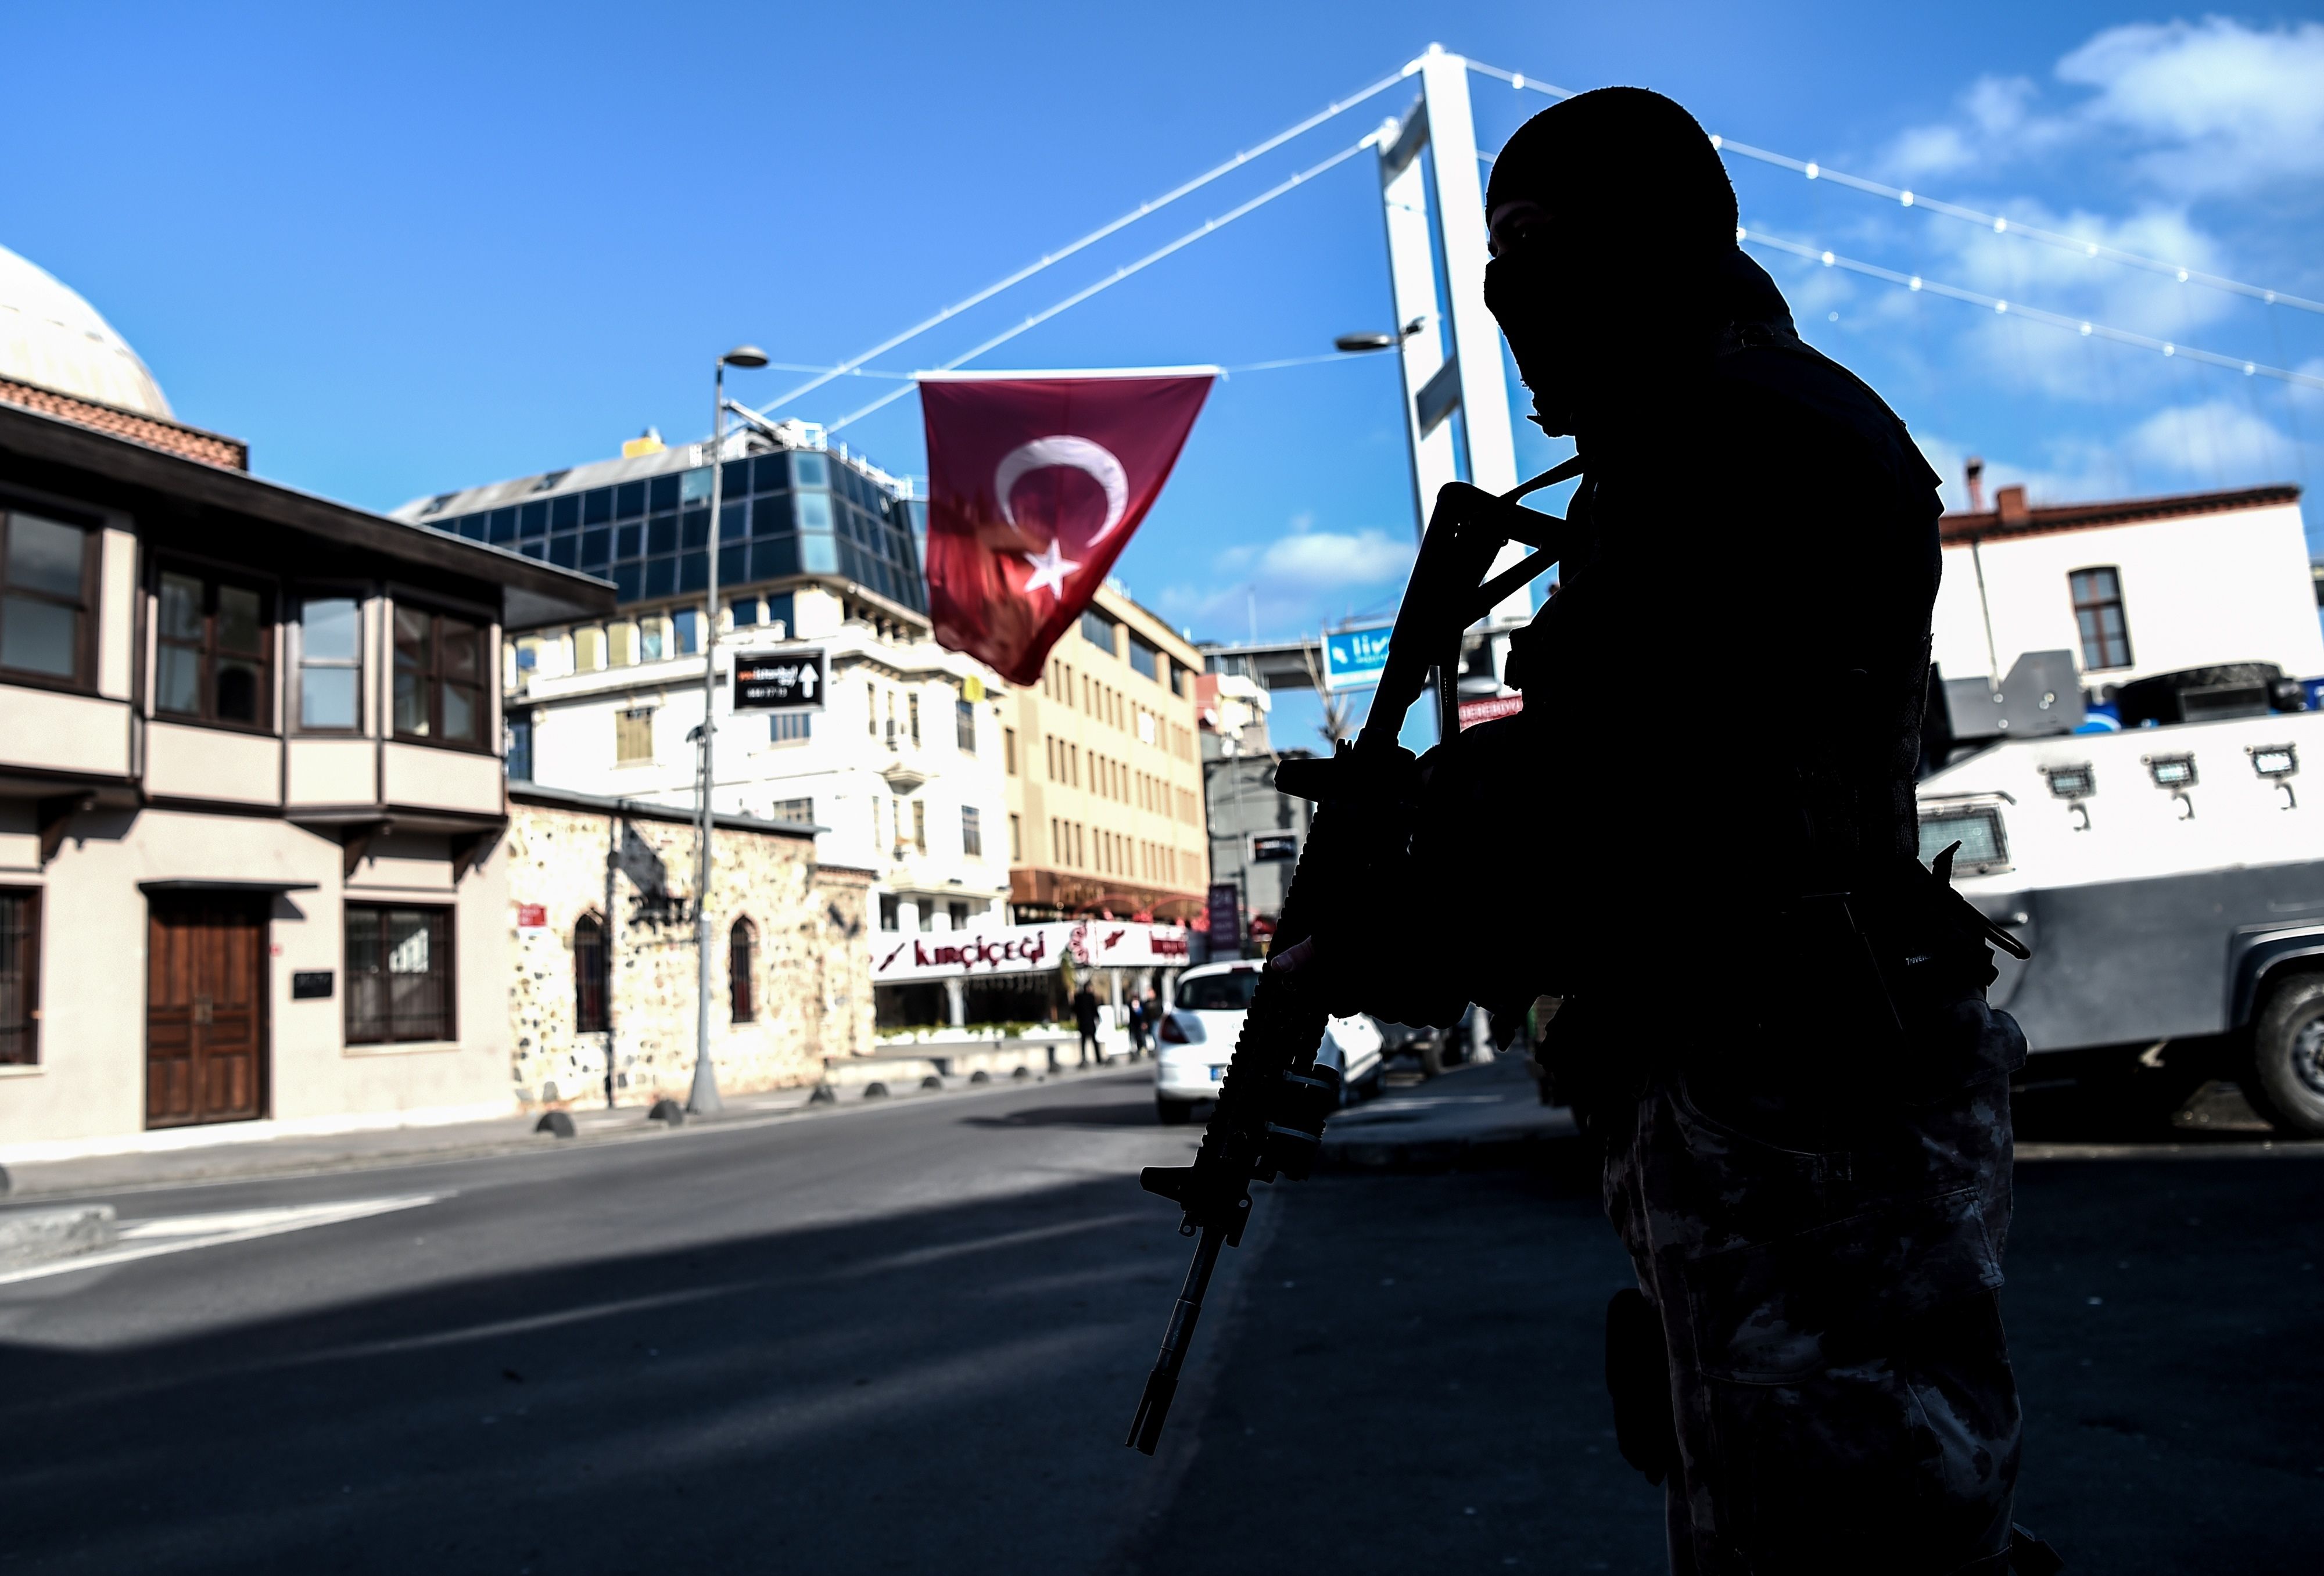 كيف استطاع القاتل في هجوم اسطنبول إصابة 104 أشخاص في 7 دقائق